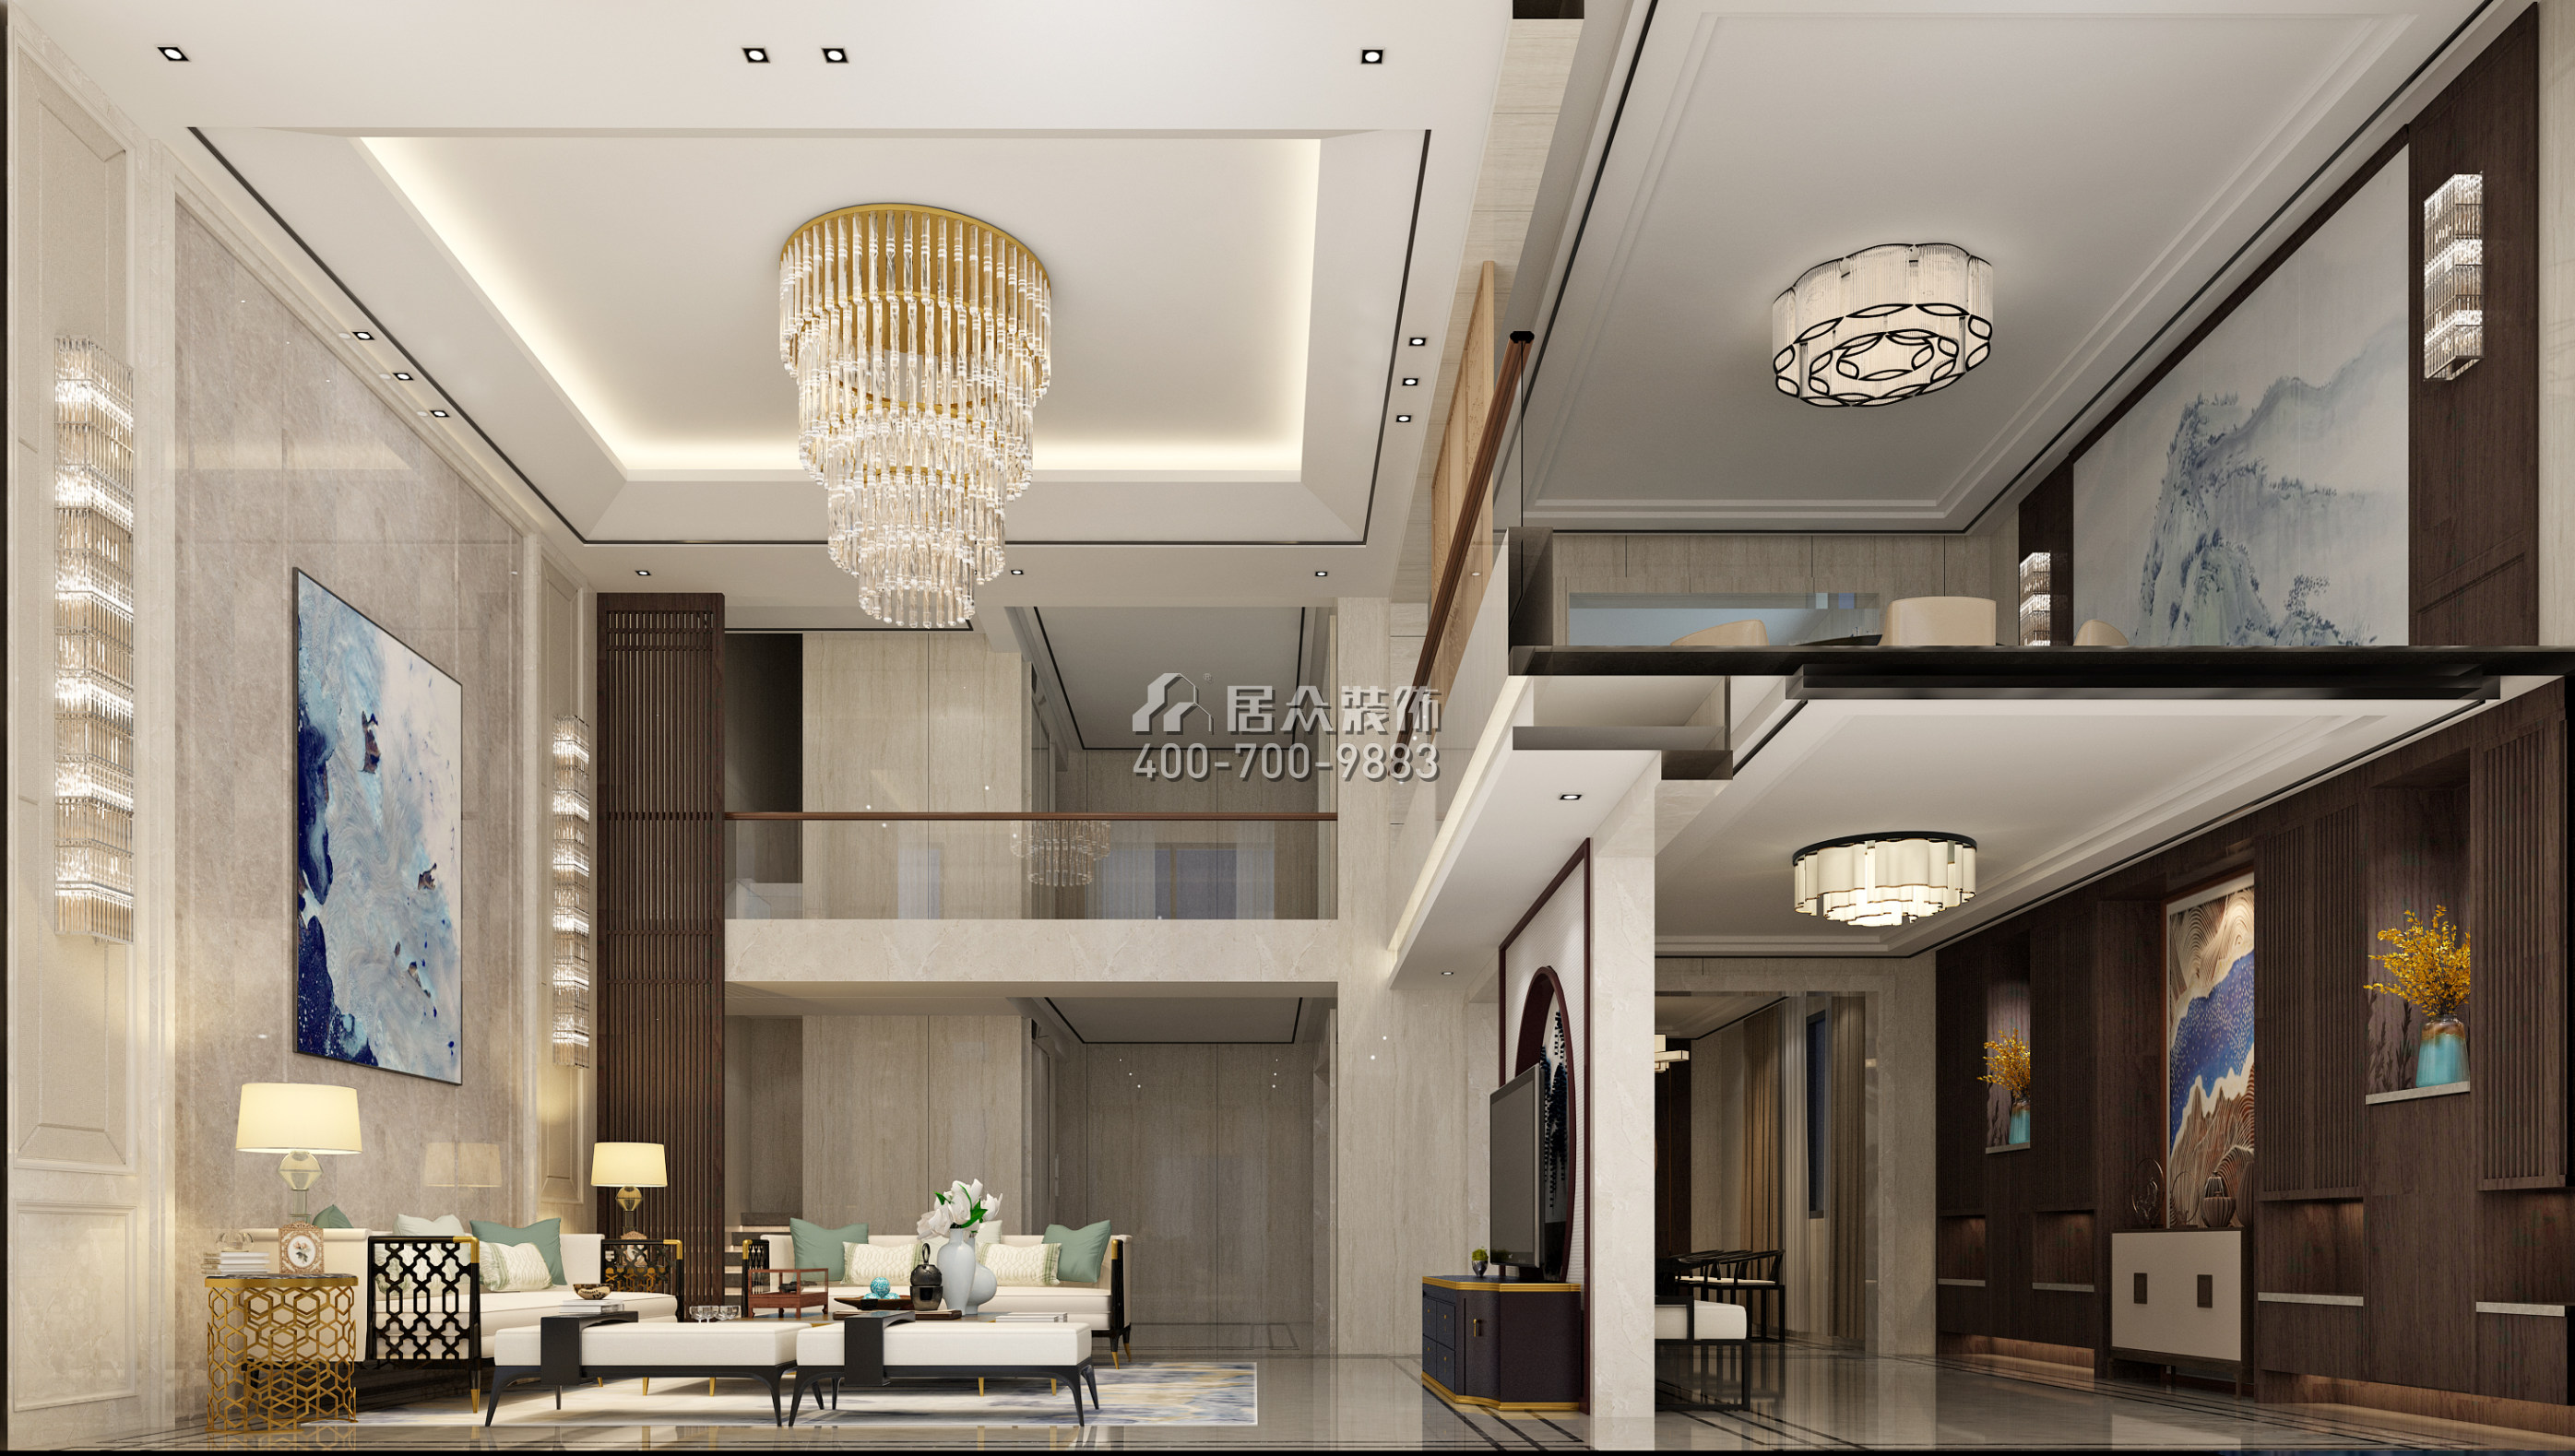 信榮海逸半島500平方米中式風格別墅戶型客廳裝修效果圖